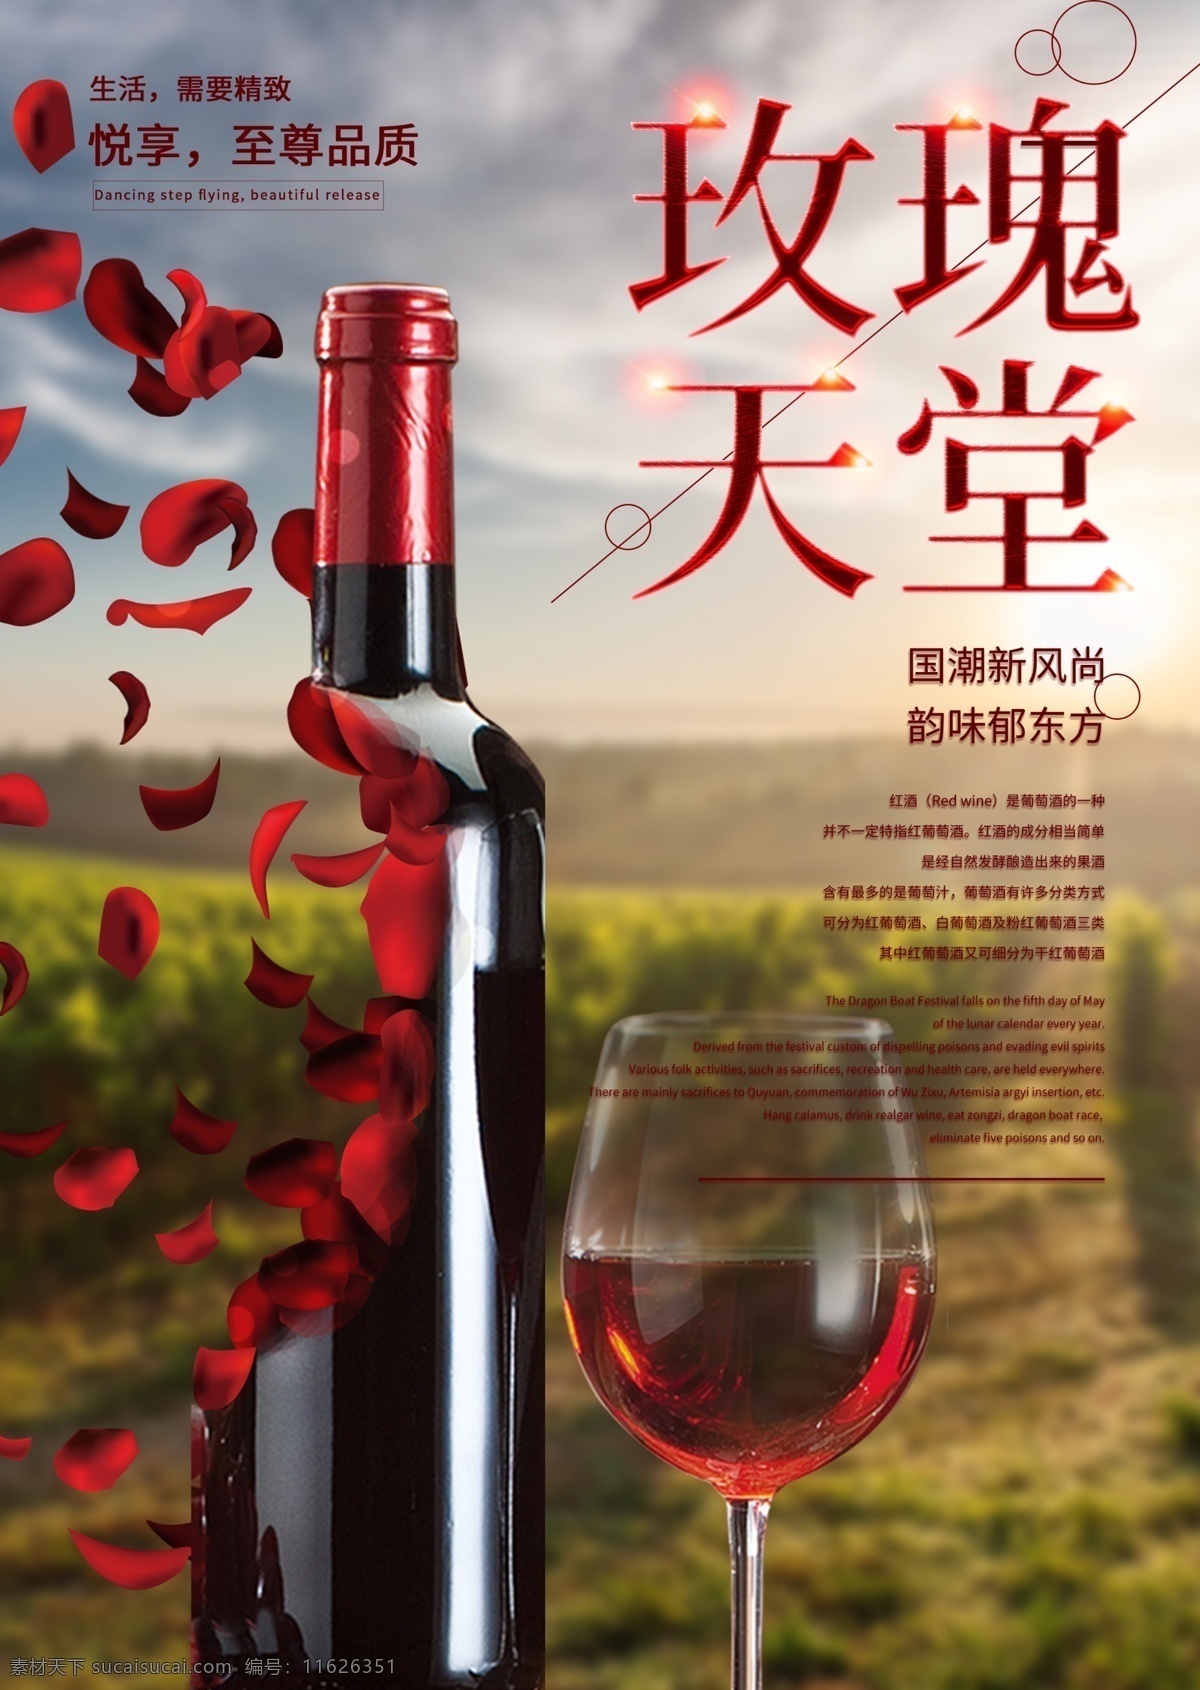 奢华 享受 法国 红酒 浪漫 葡萄酒 促销 海报 法国红酒海报 红酒海报 葡萄酒海报 促销海报 玫瑰